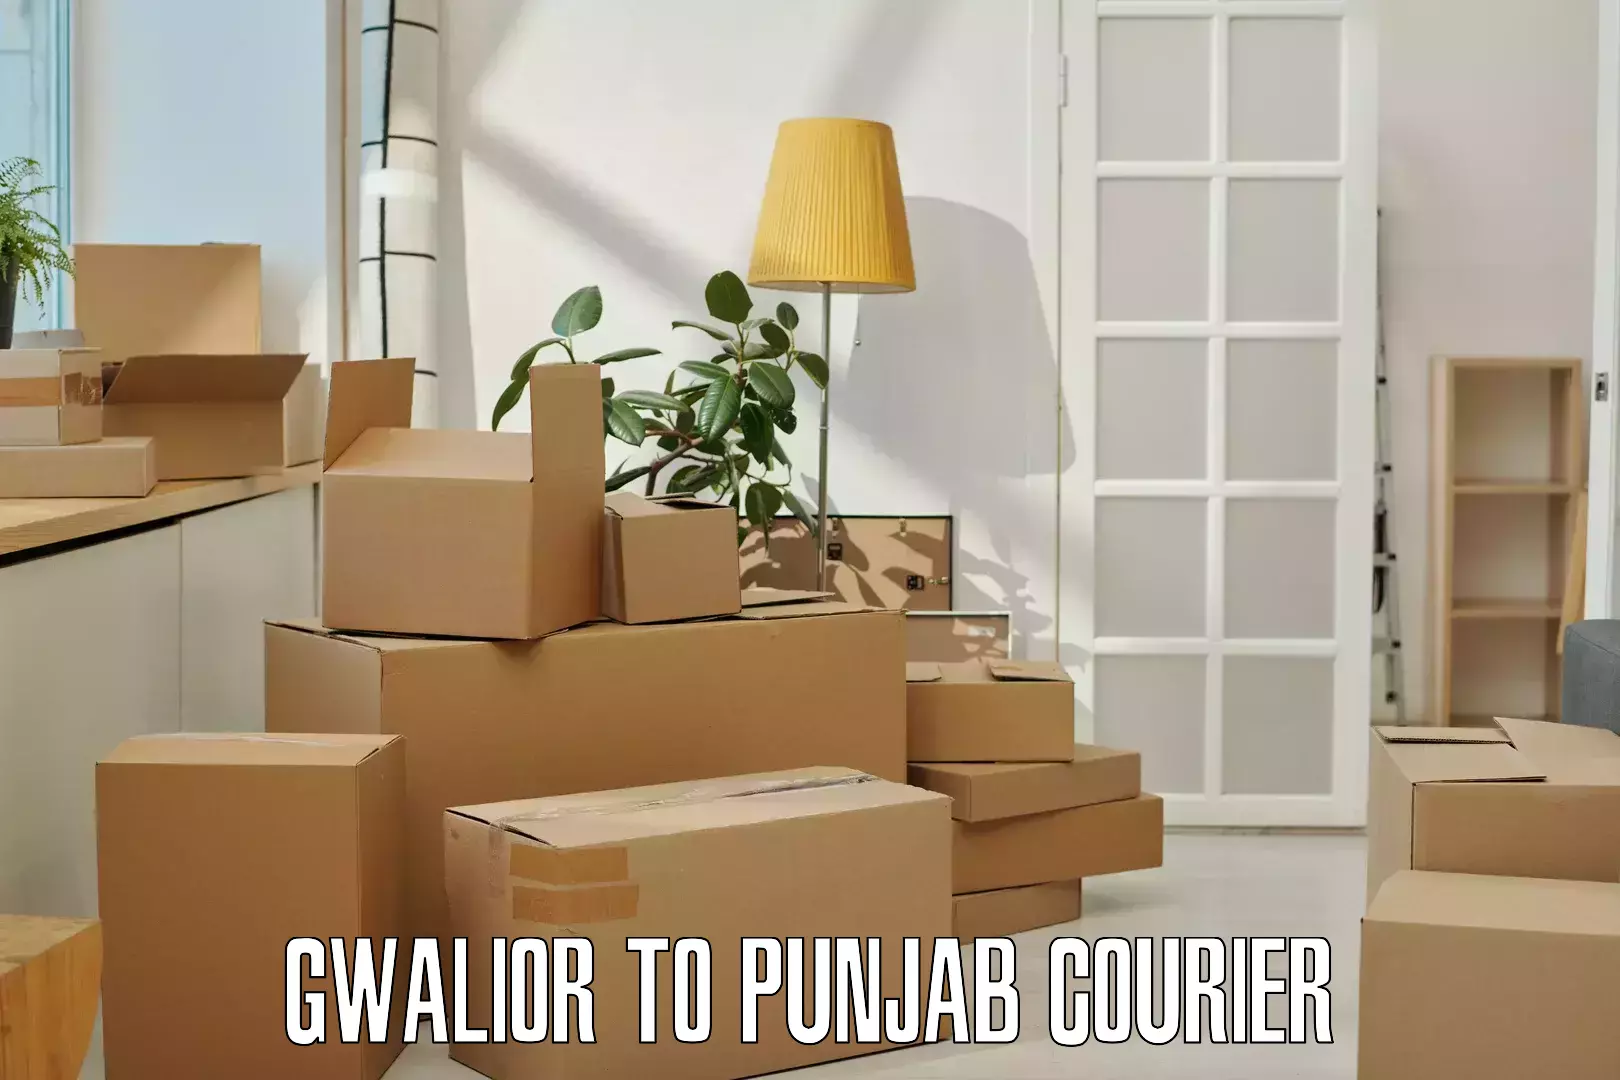 Doorstep parcel pickup in Gwalior to Punjab